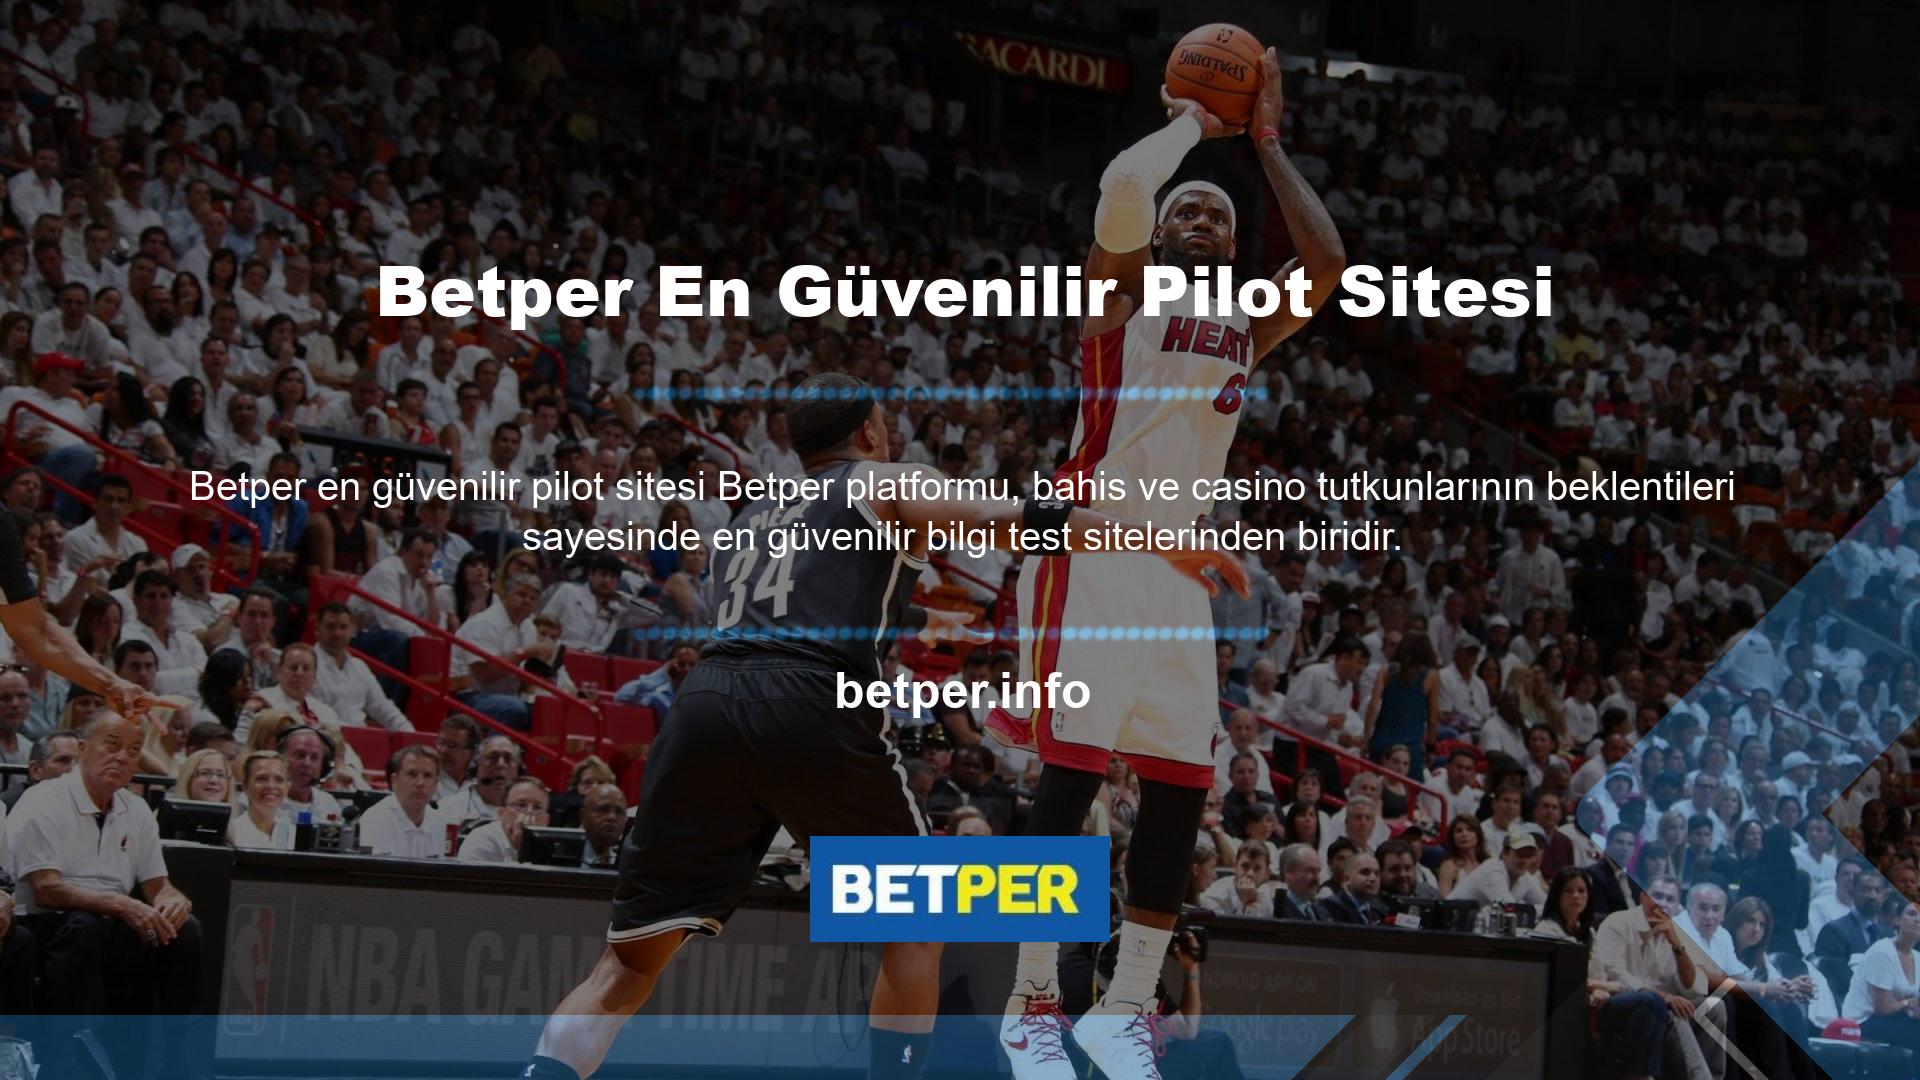 Betper ülkemizde kampanyayı yeni başlattı ancak kısa sürede en popüler ve güvenilir pilot sitelerden biri haline geldi